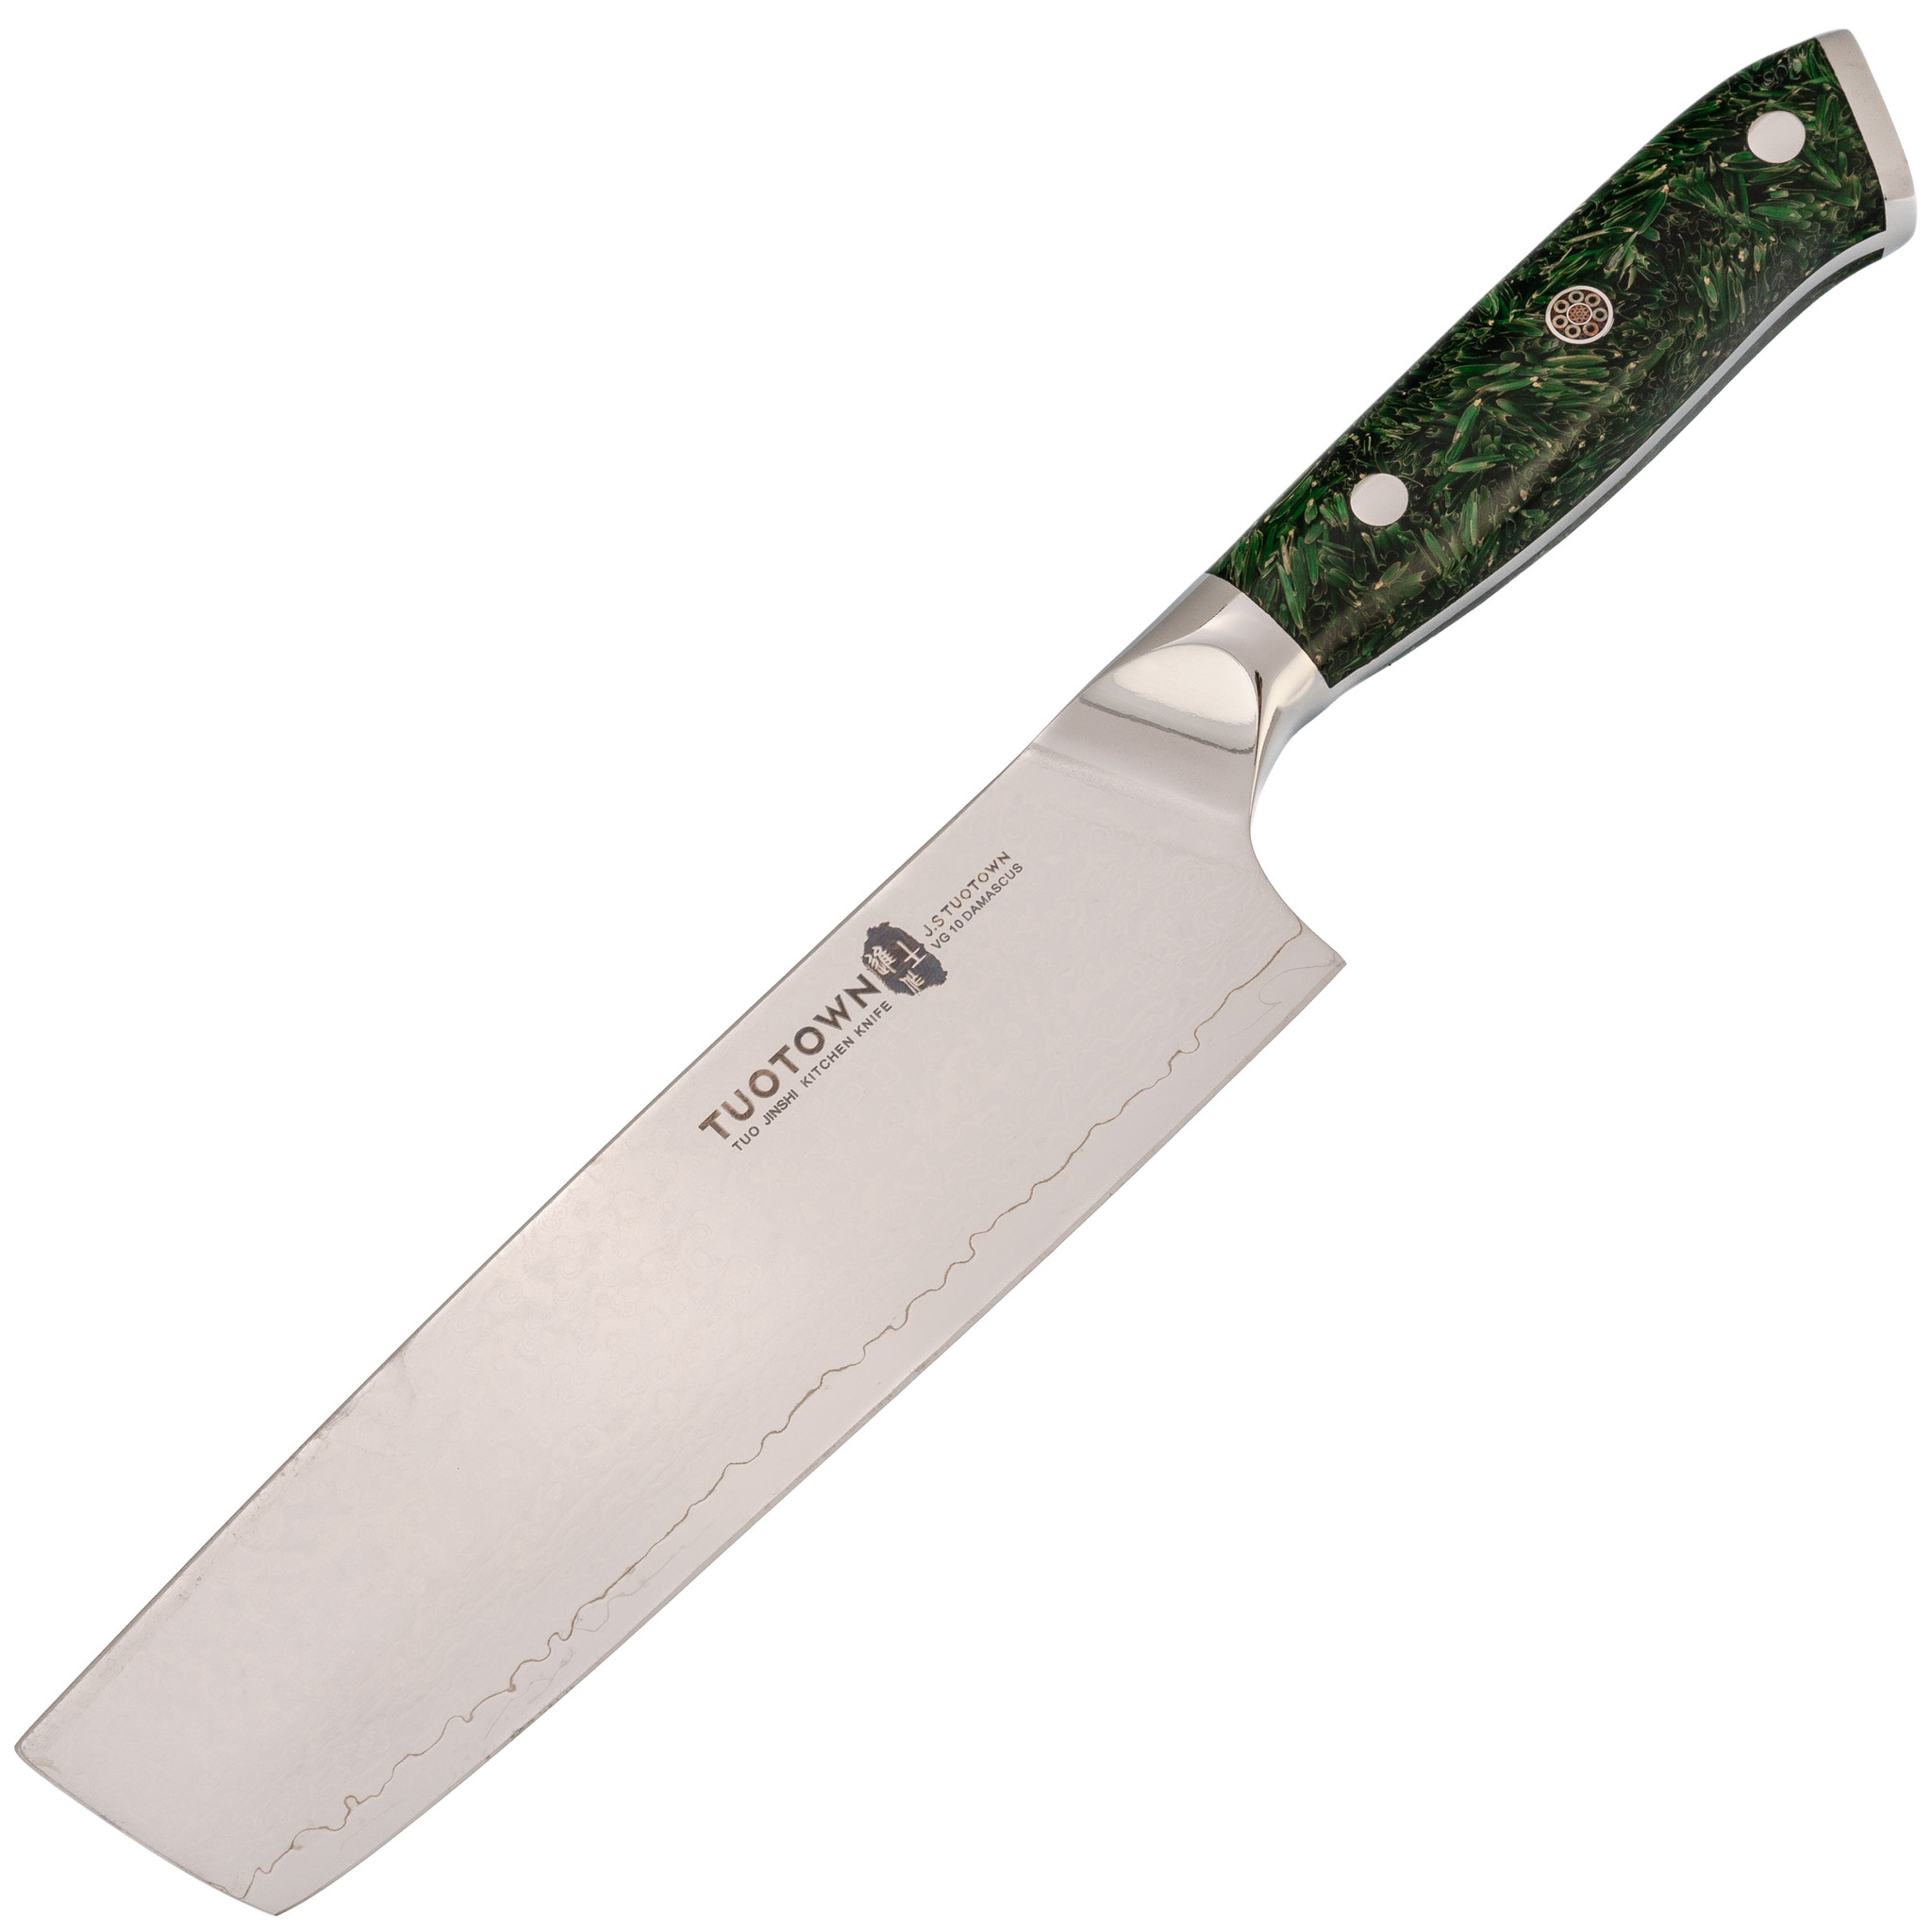 Кухонный нож Накири Tuotown, сталь VG10, обкладка Damascus, рукоять акрил, зеленый